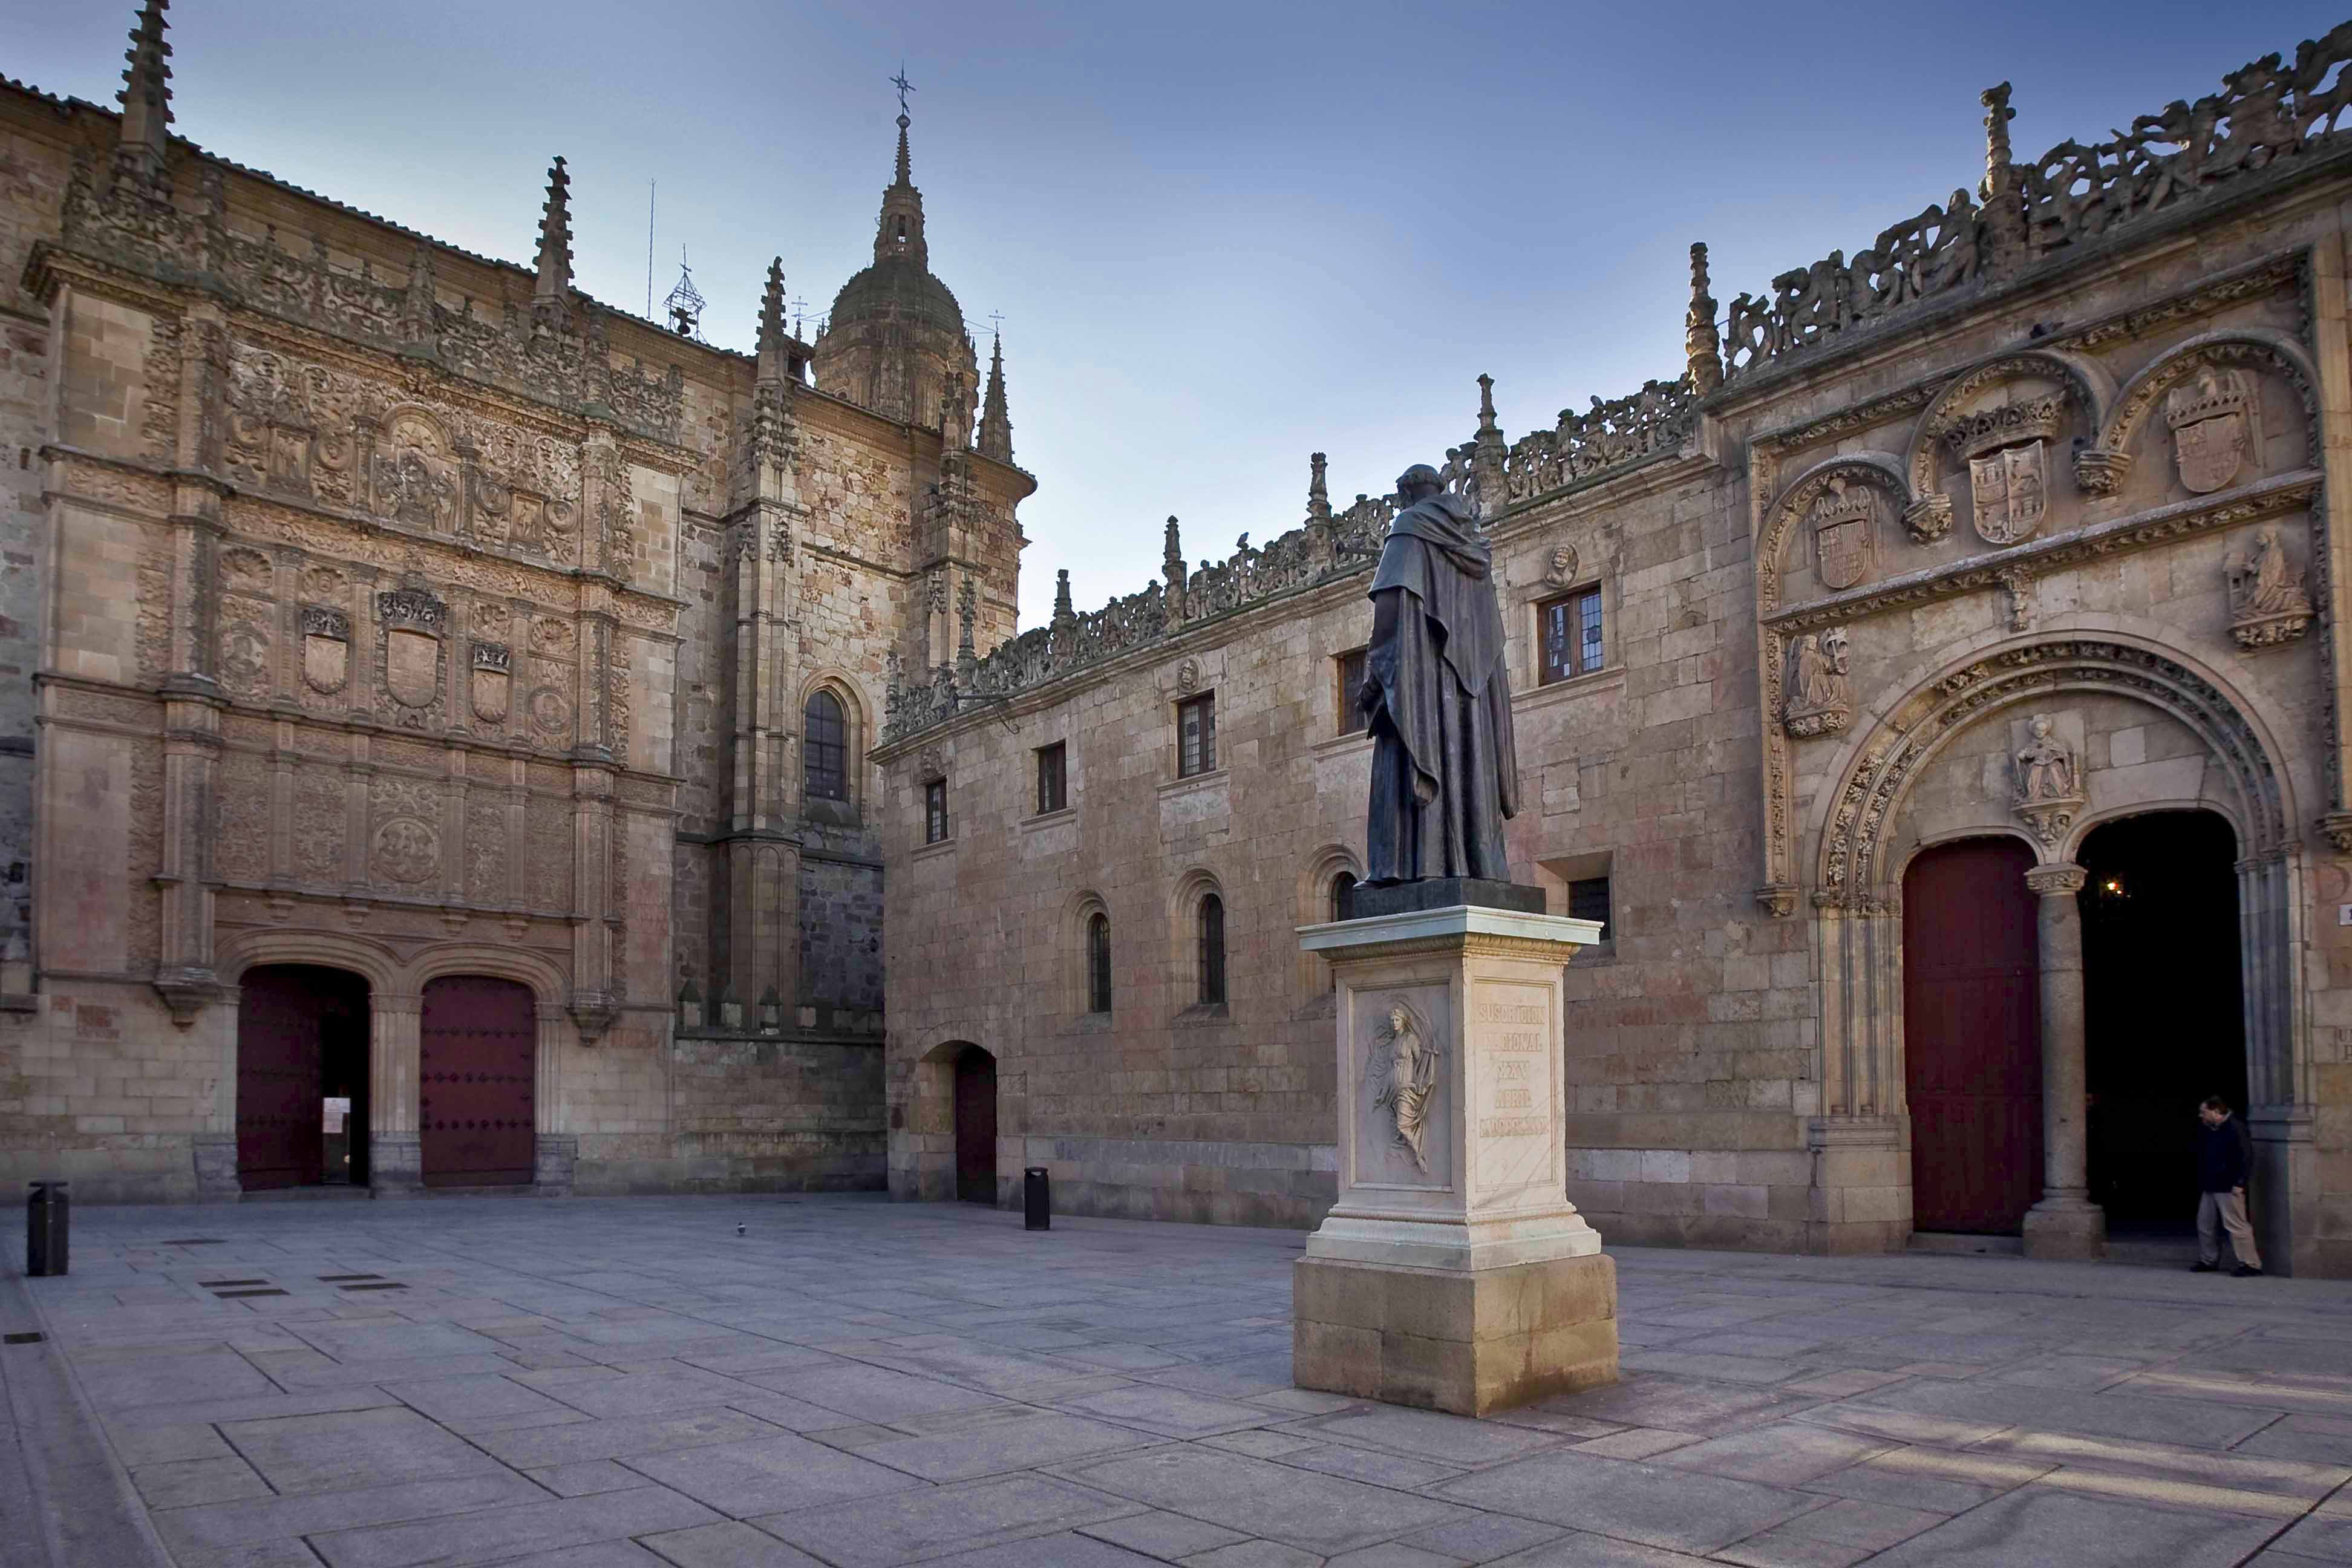 Университет саламанки - один из старейших университетов испании